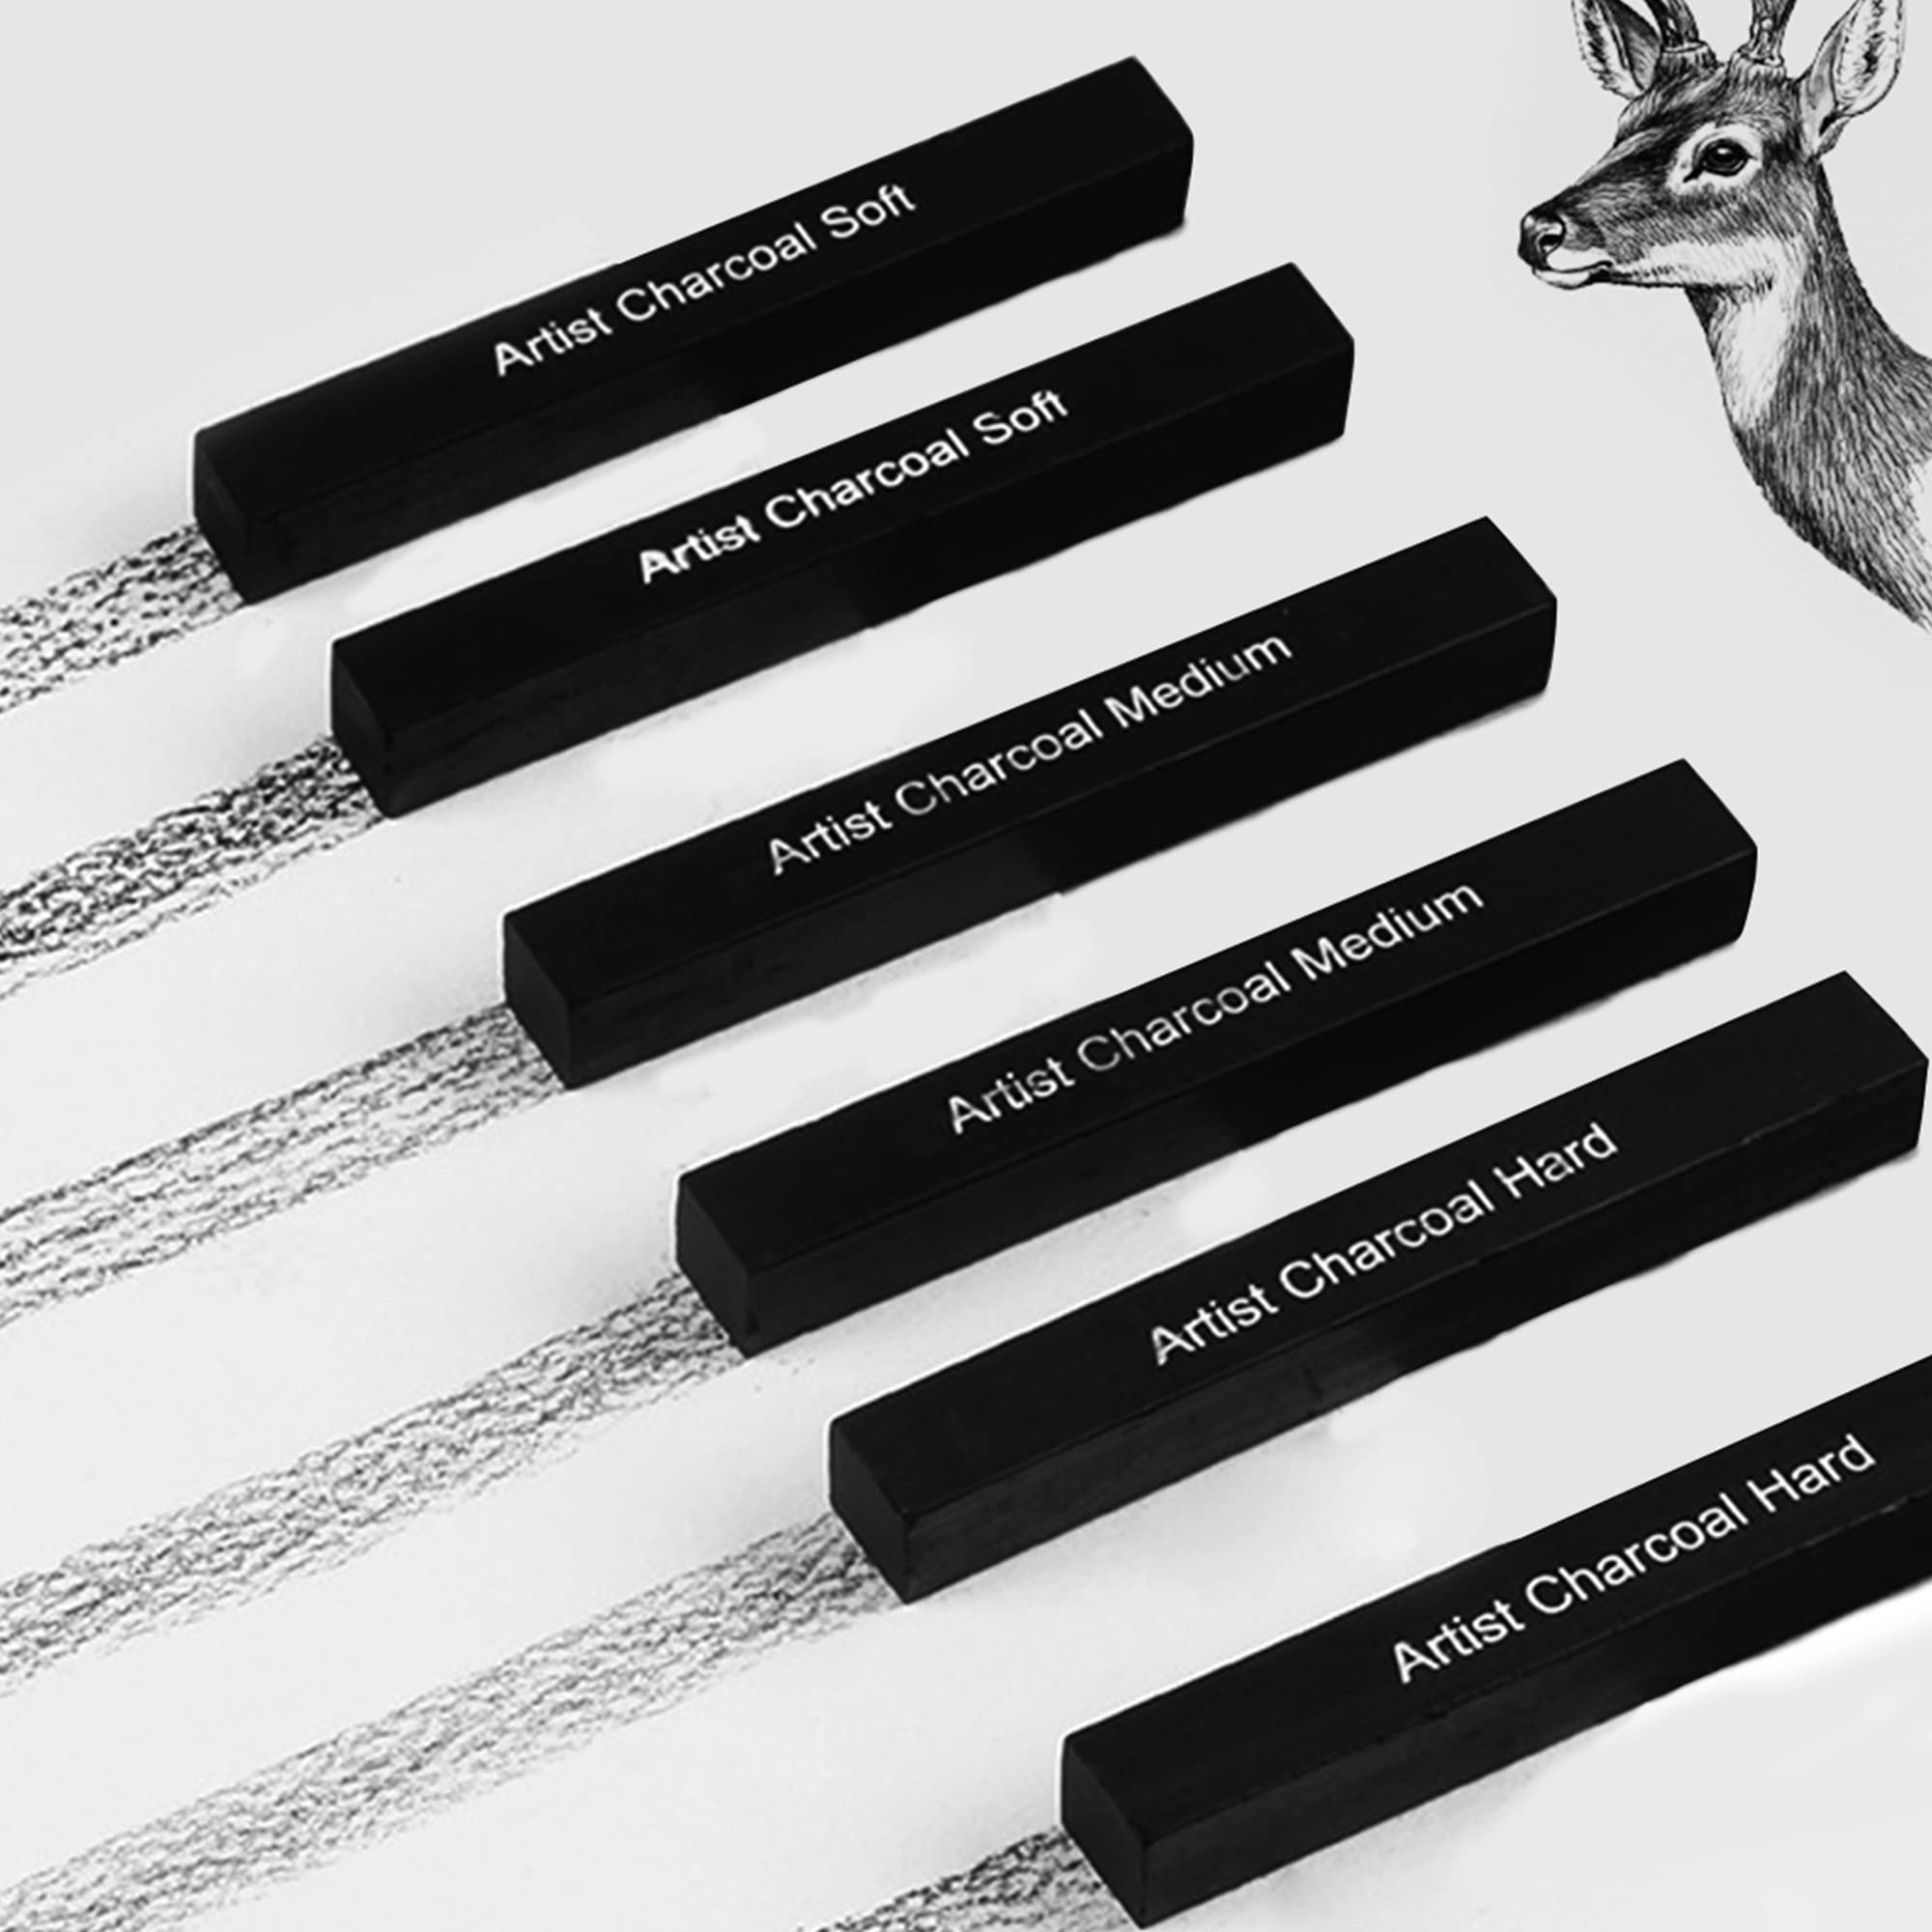 ANNECOSK 6 Pack Compressed-Charcoal-Sticks Vine Charcoal Sticks